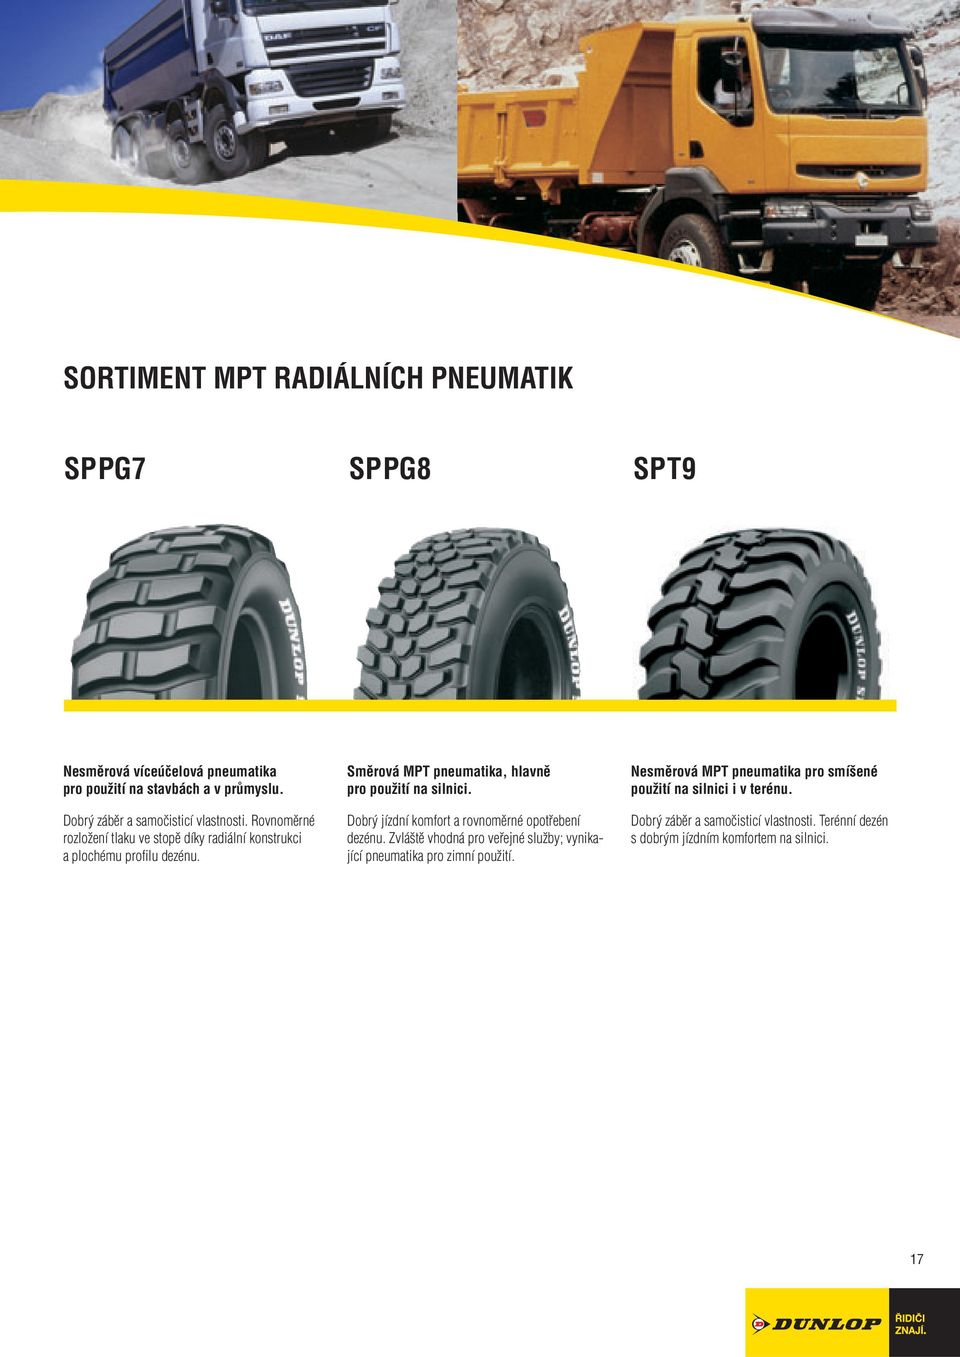 Směrová MPT pneumatika, hlavně pro použití na silnici. Dobrý jízdní komfort a rovnoměrné opotřebení dezénu.